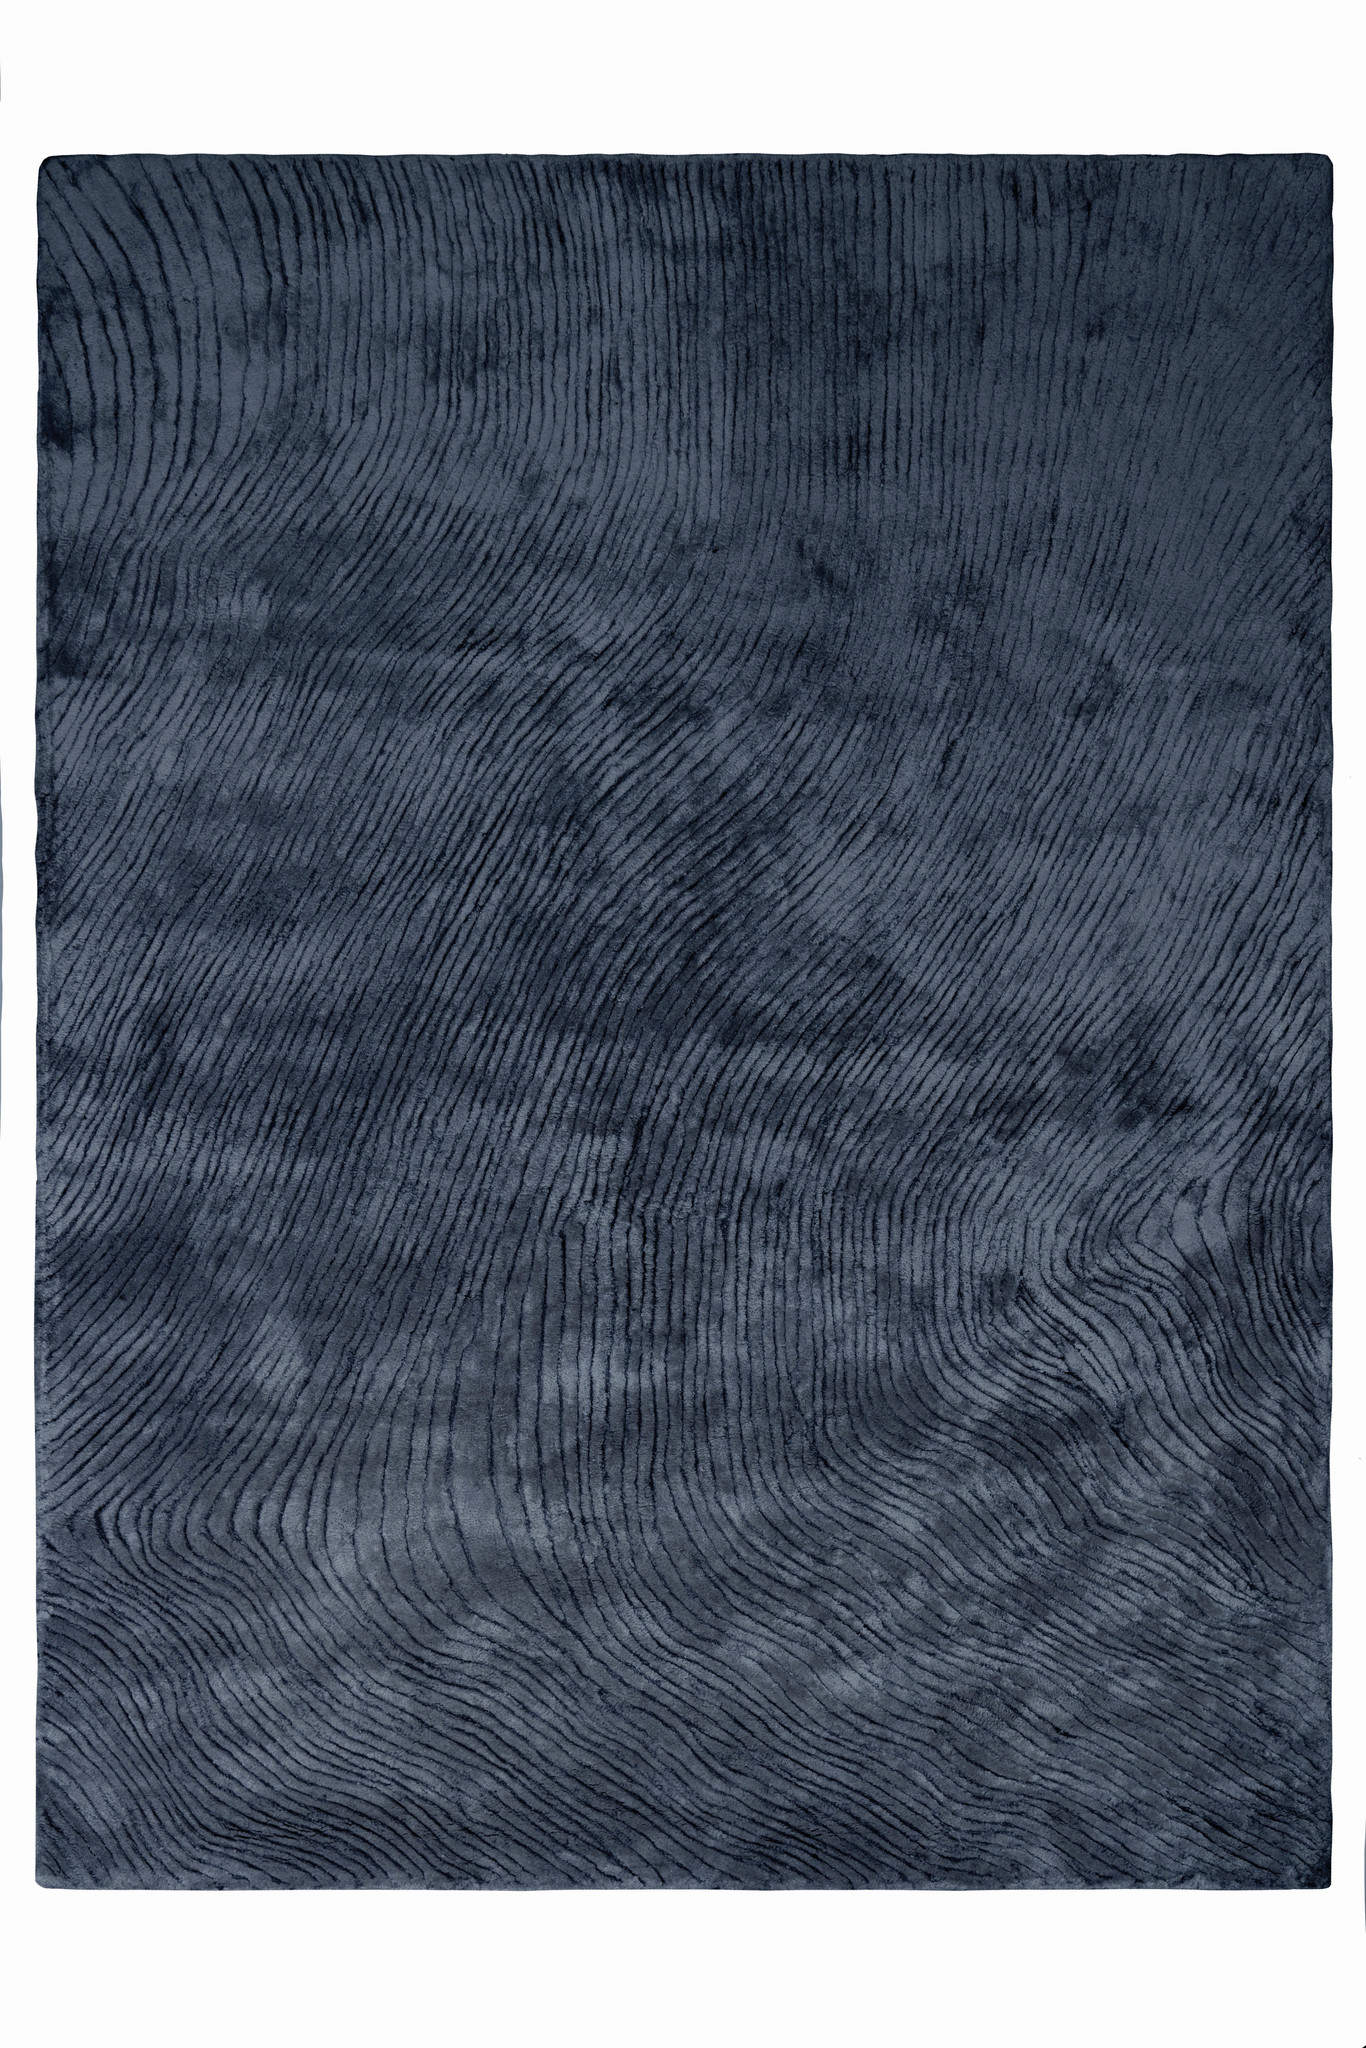 Ковер Carpet Canyon Dark Blue 160/230